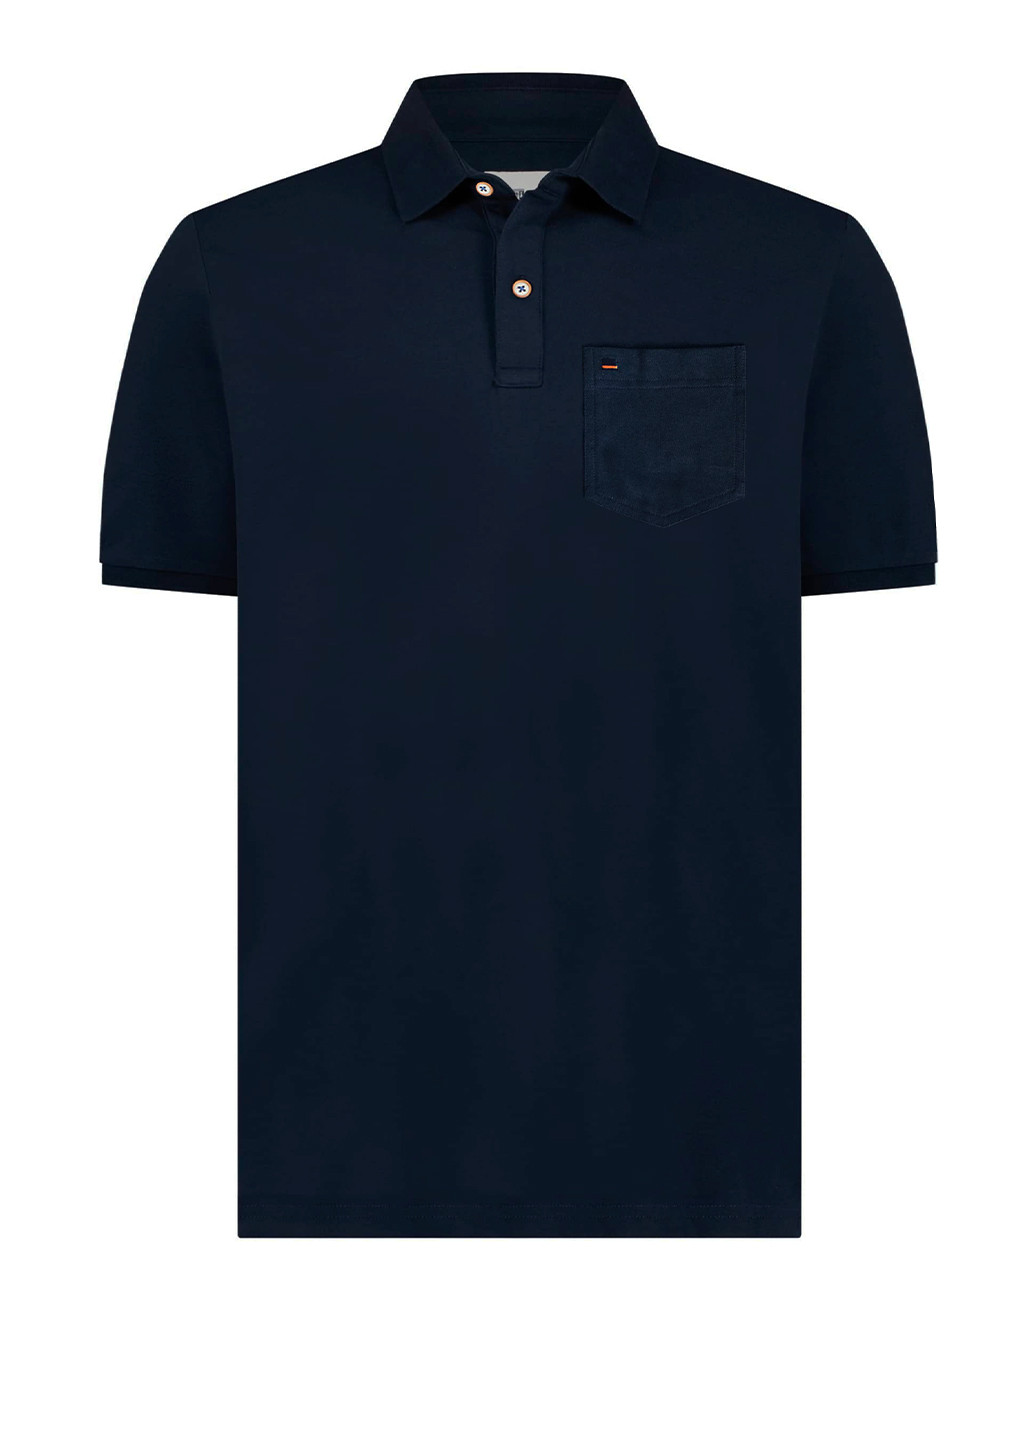 Темно-синяя футболка-мужская футболка-поло большого размера для мужчин State of Art однотонная